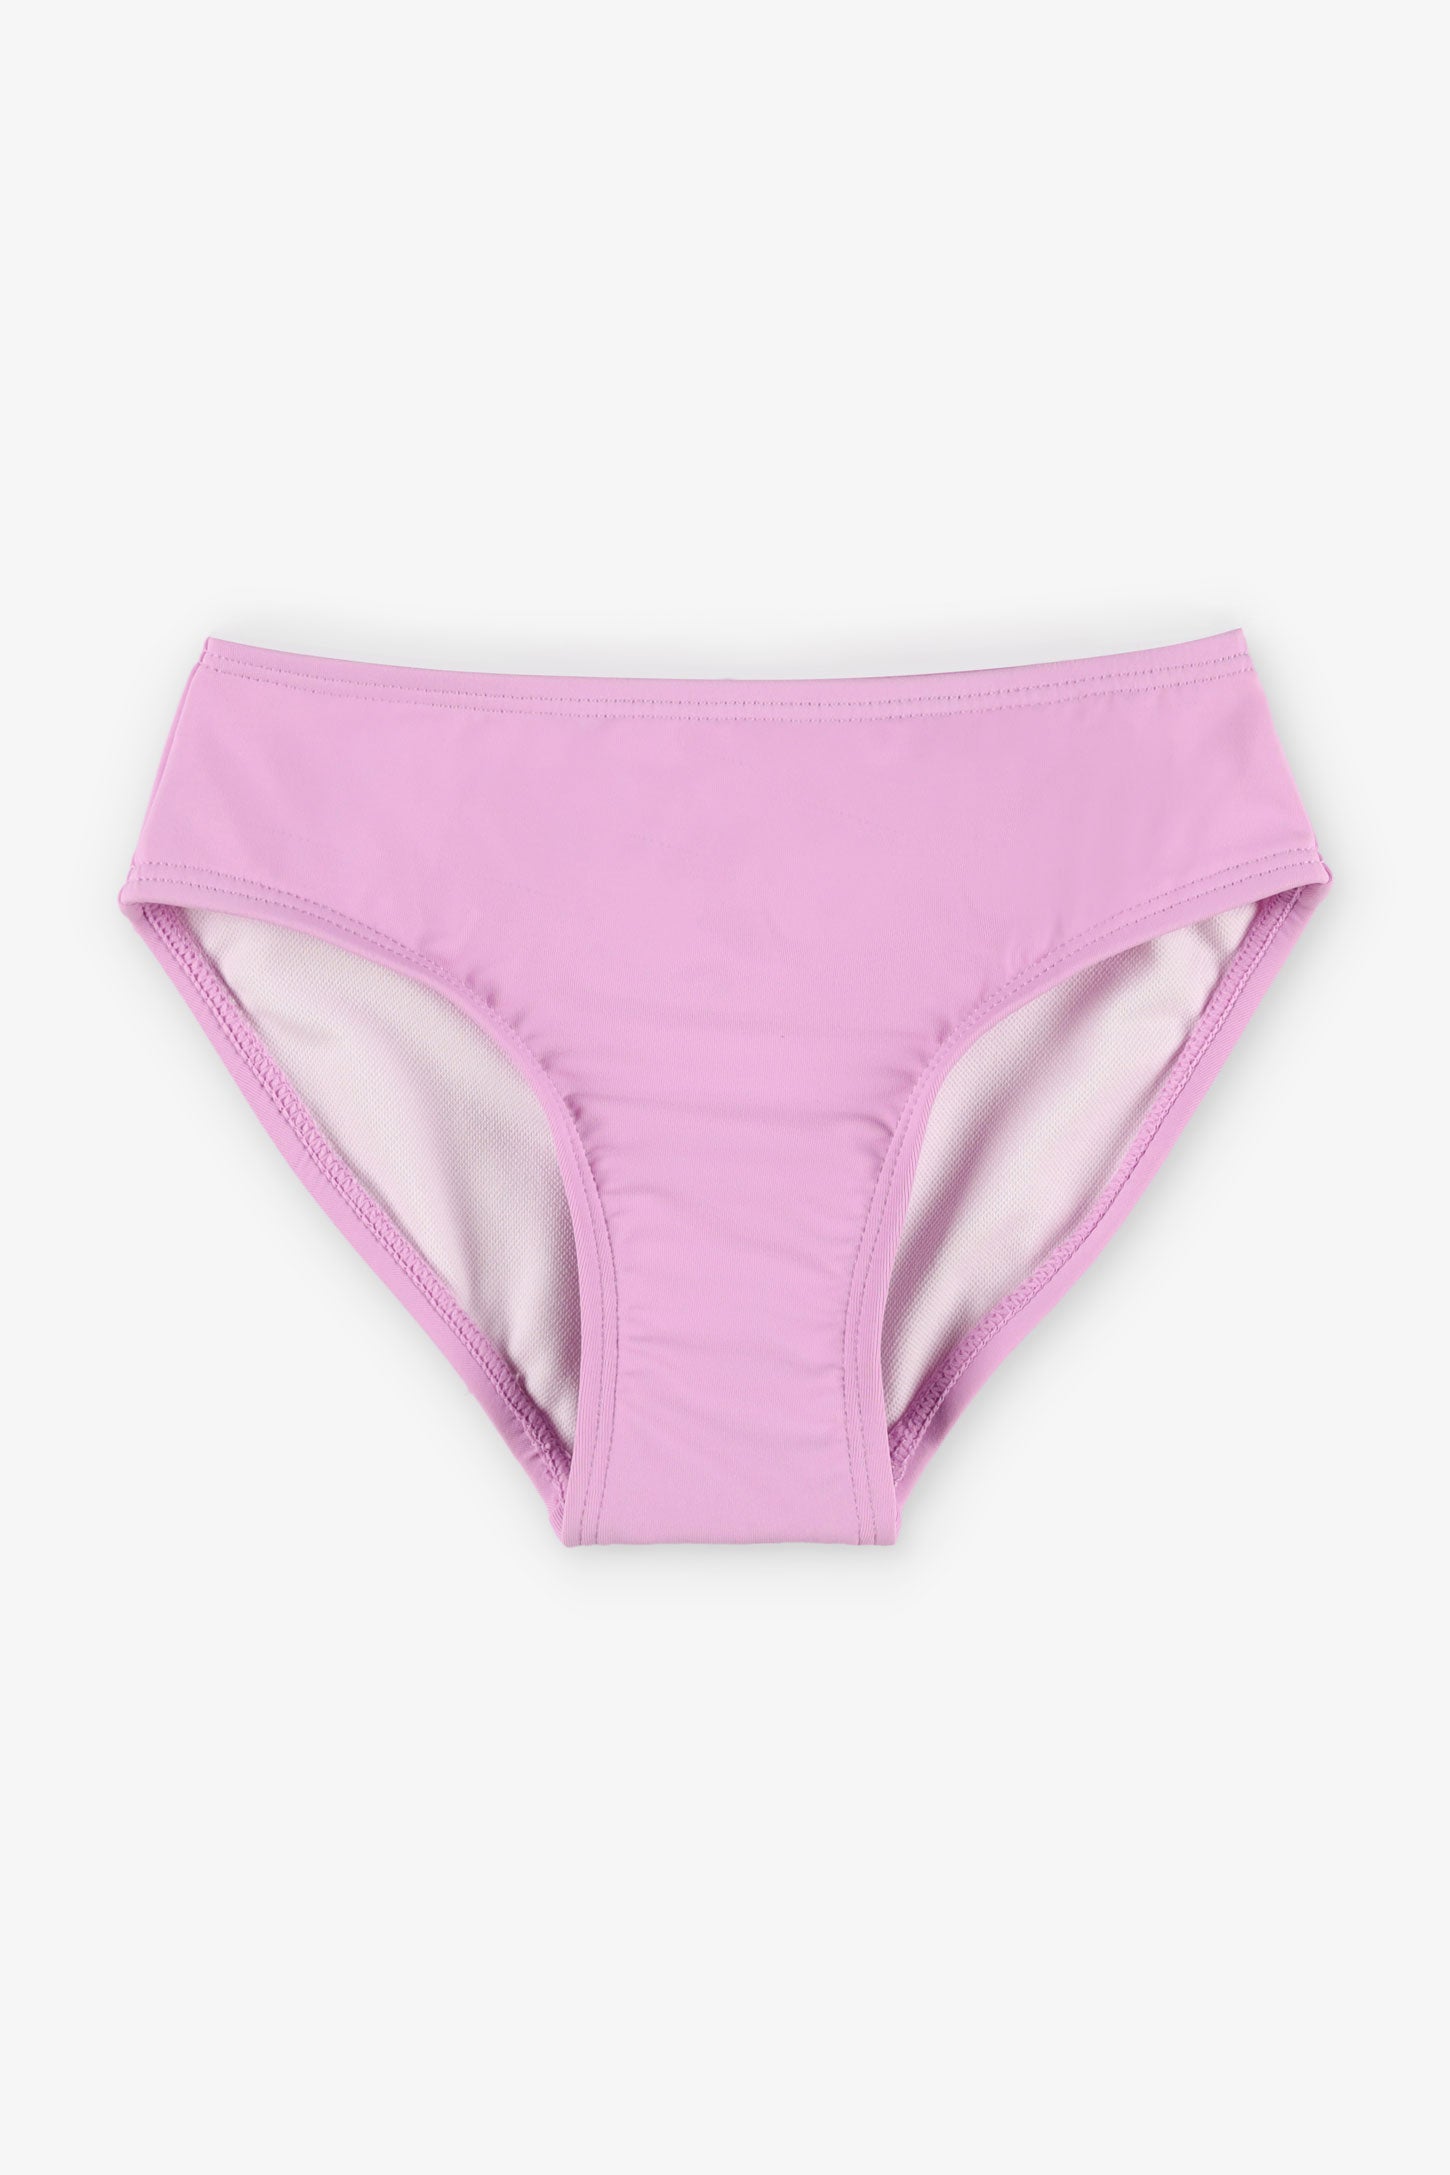 Culotte maillot de bain Bikini, 2/25$ - Enfant fille && MAUVE PALE